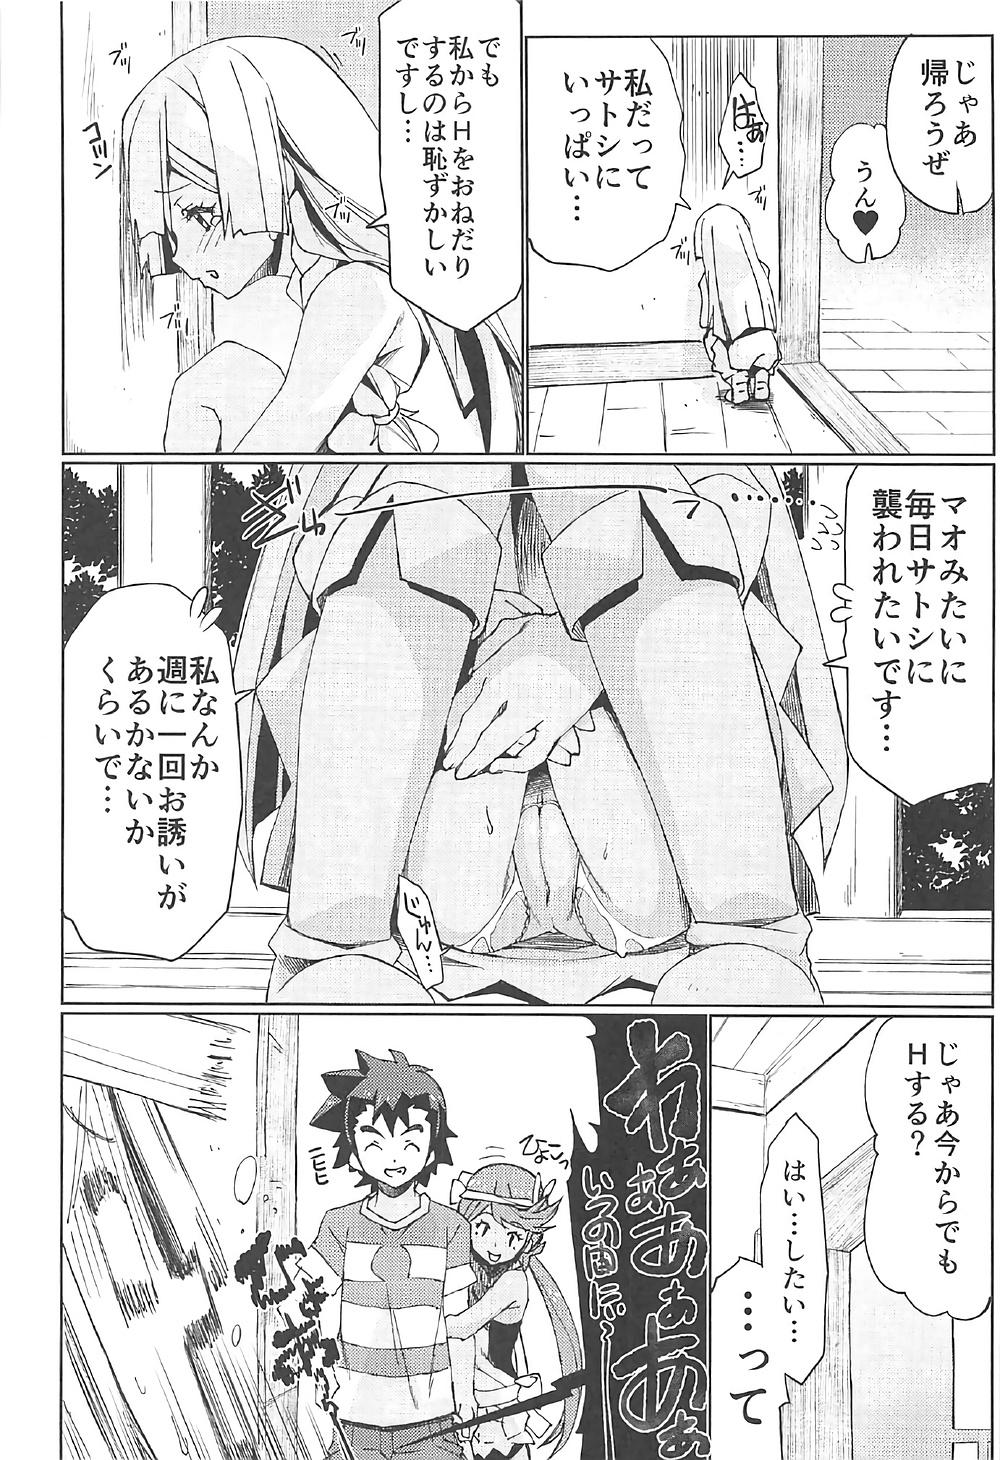 Newbie Watashi ga sono Ki ni nareba Ronriteki ni! 2!! - Pokemon Bed - Page 9